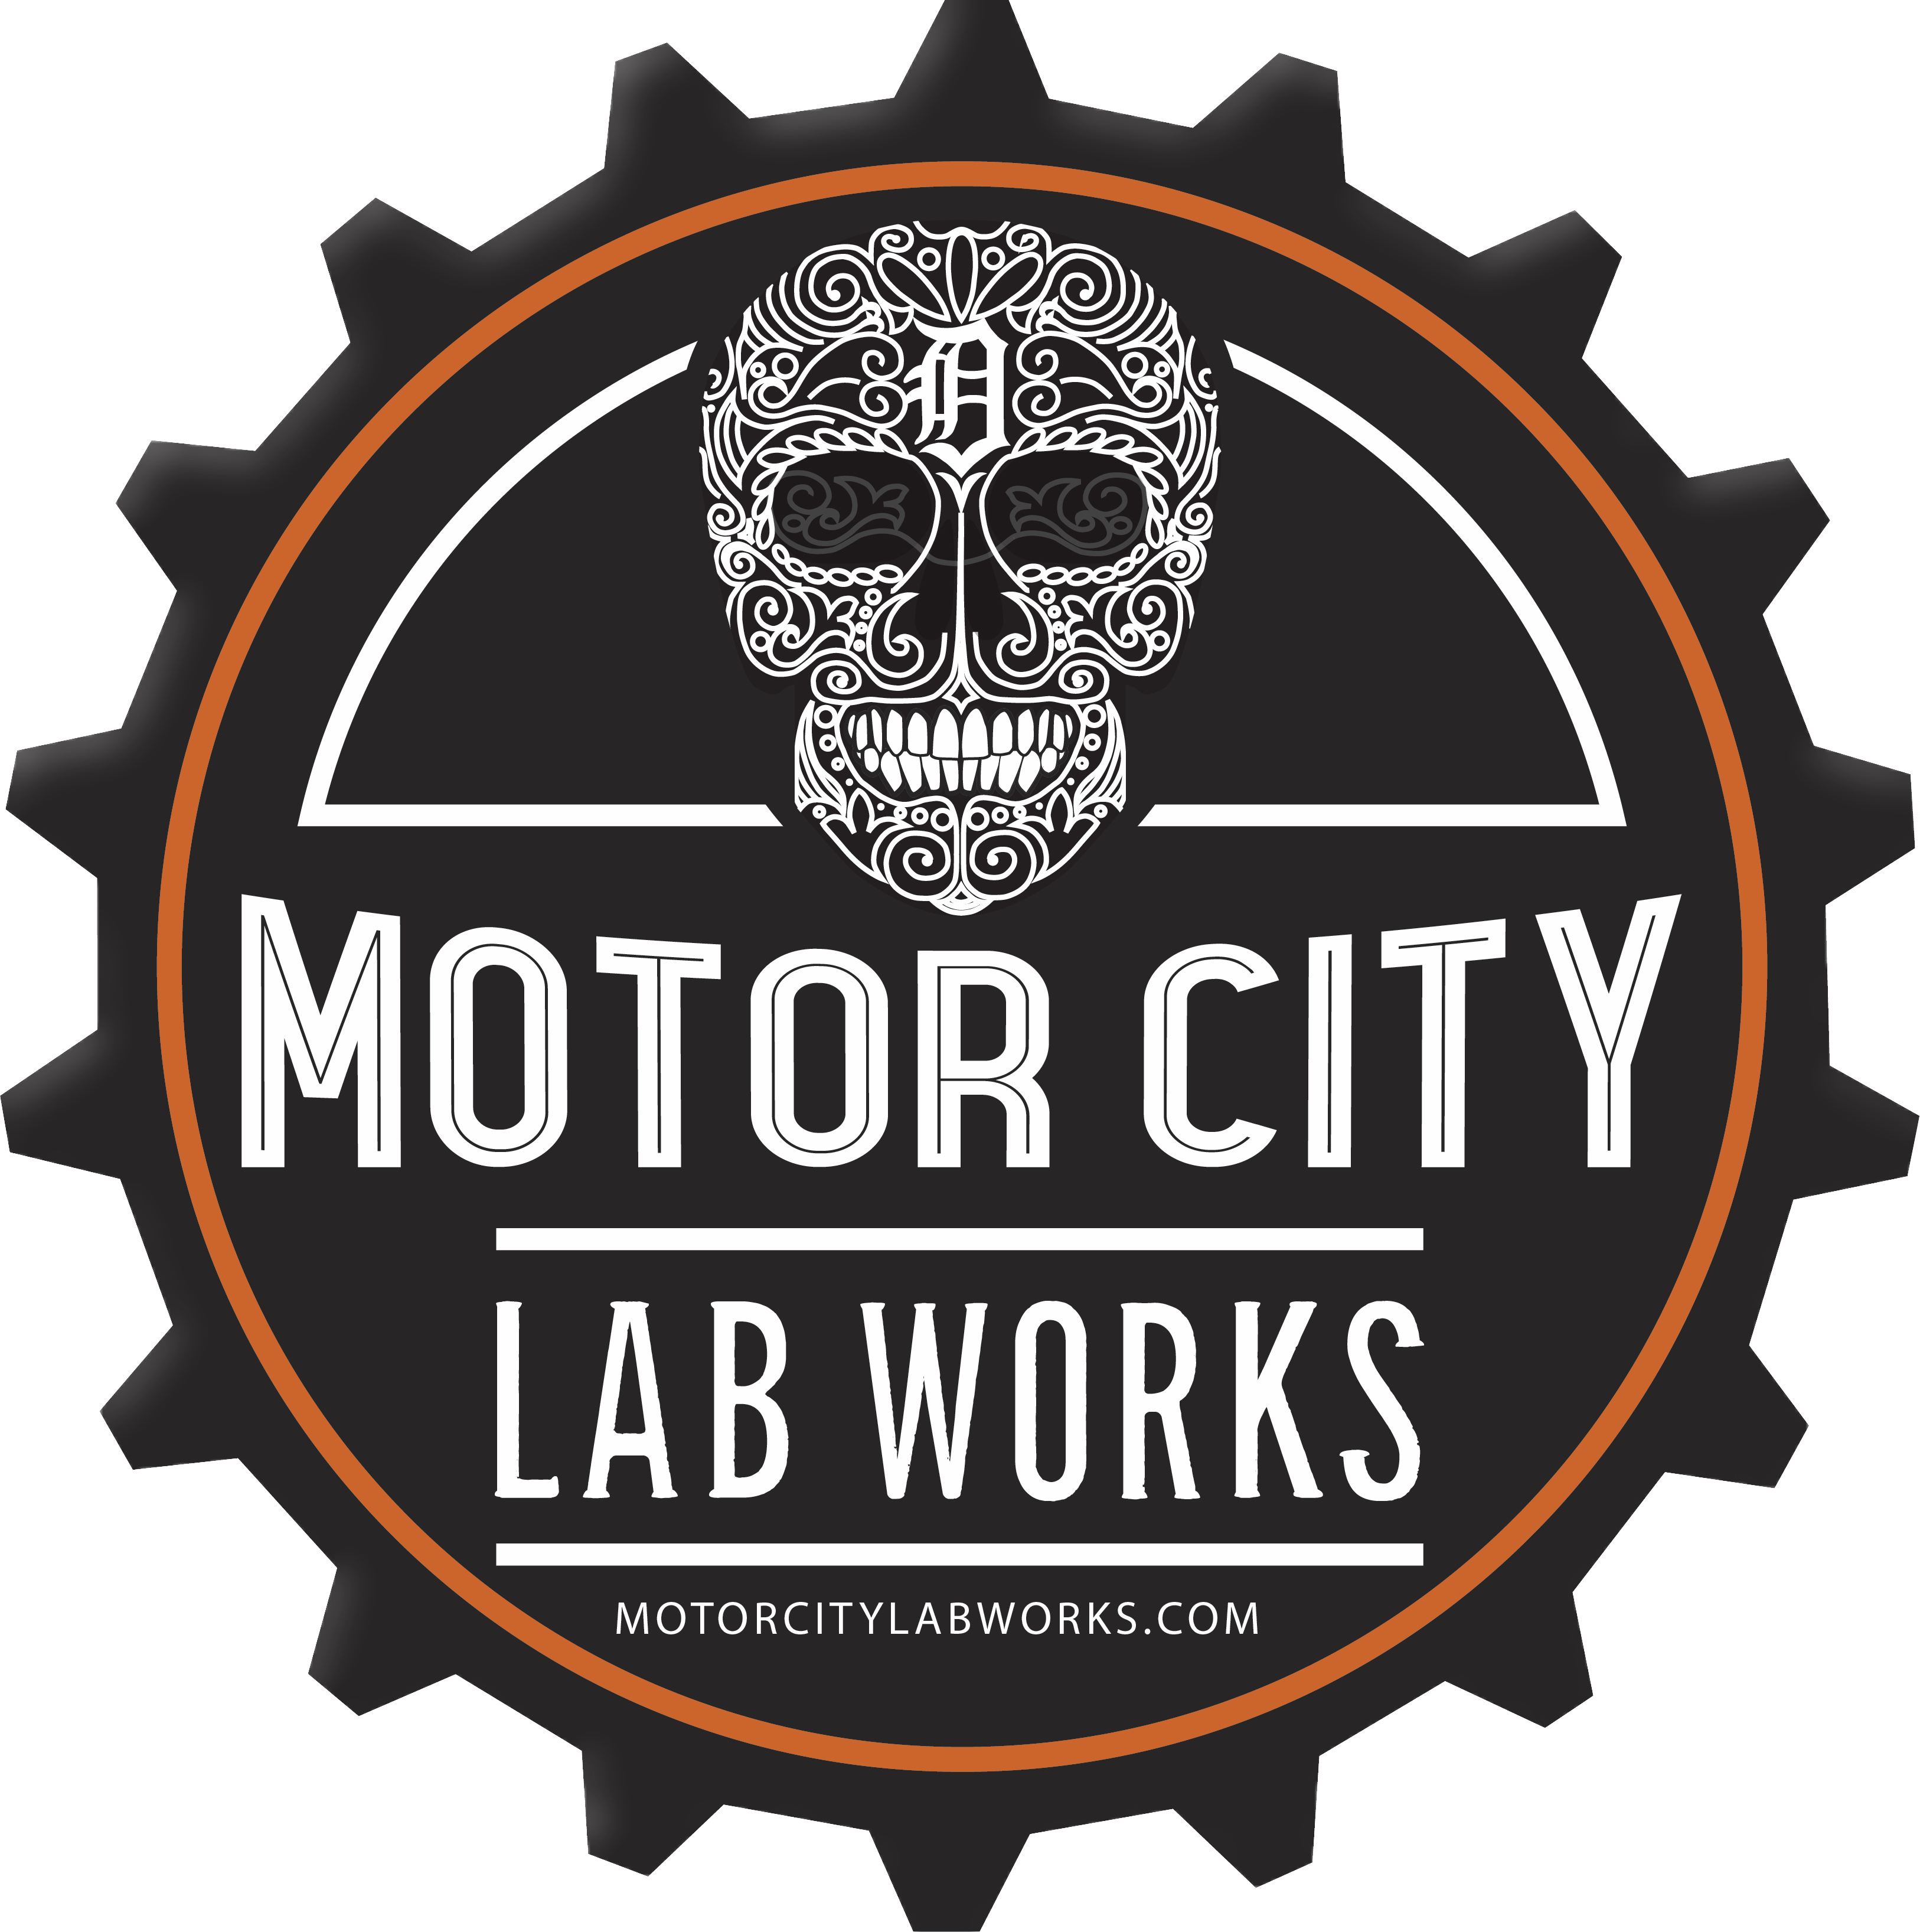 www.motorcitylabworks.com